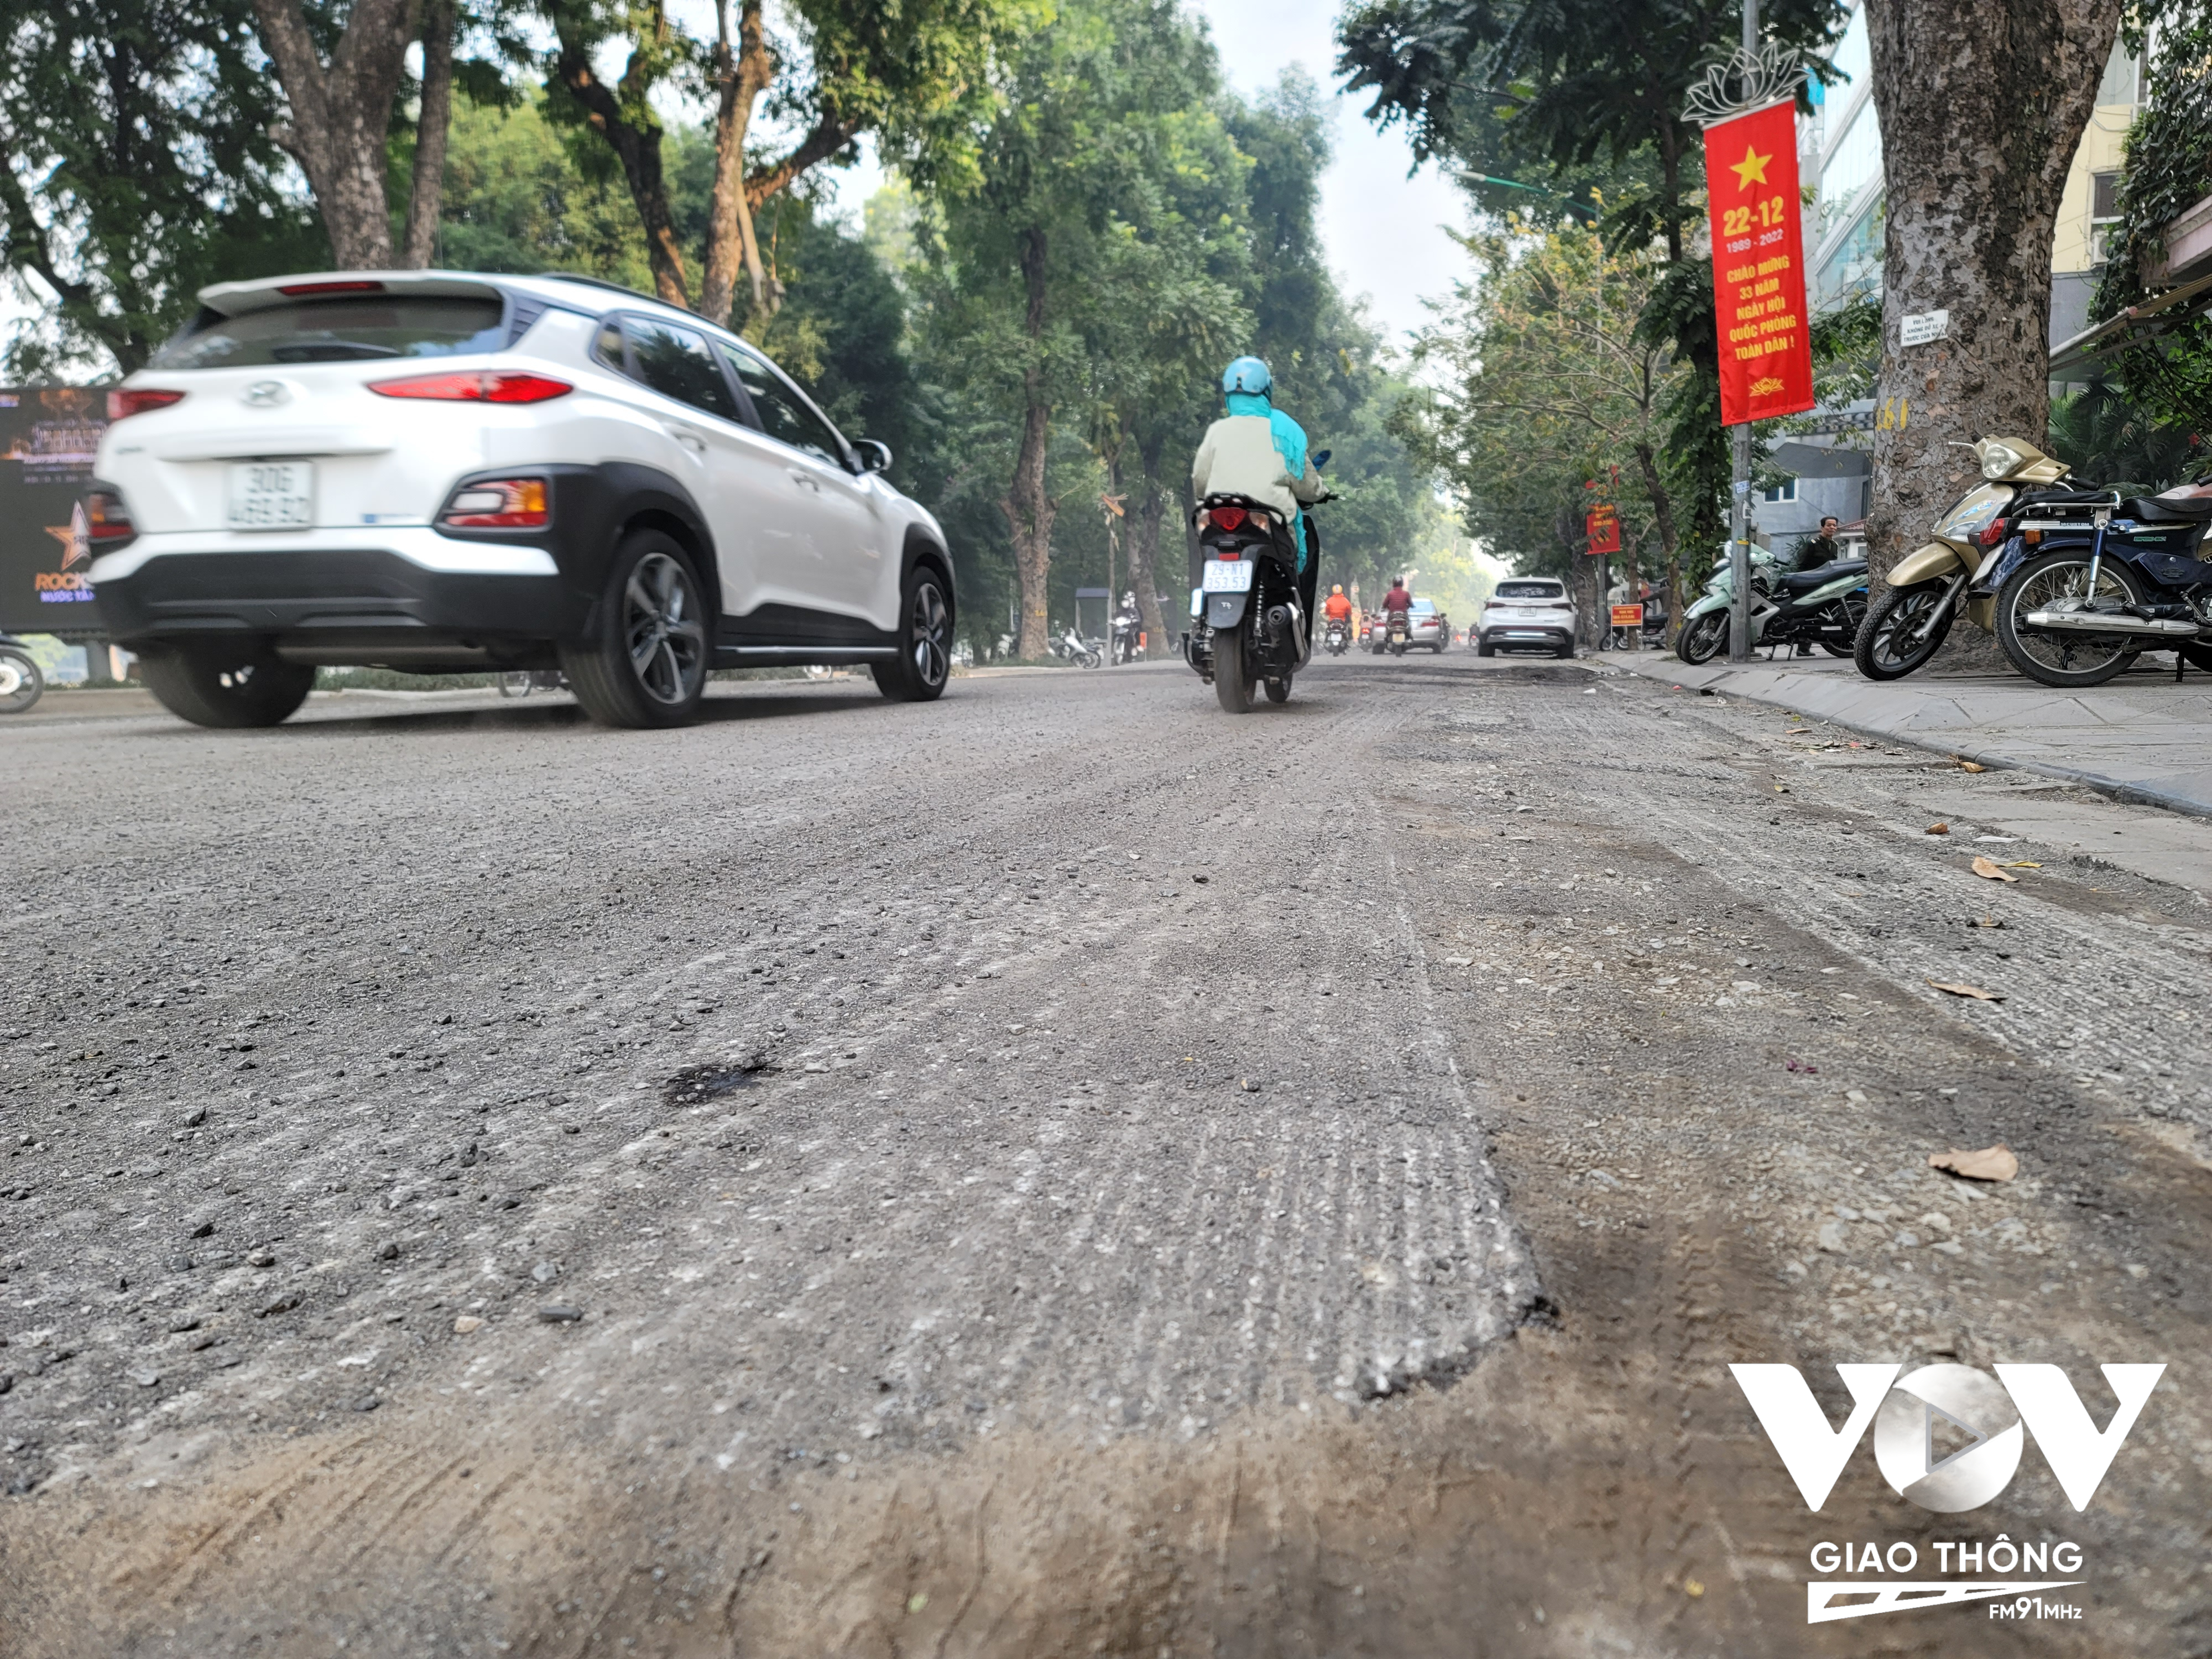 Các tuyến phố ở trung tâm Hoàn Kiếm như Quang Trung, Quán Sứ cũng bắt đầu được cào mặt nhựa chuẩn bị chỉnh trang. Phương tiện đi qua không những chịu khói bụi mà còn loạng quạng tay lái.